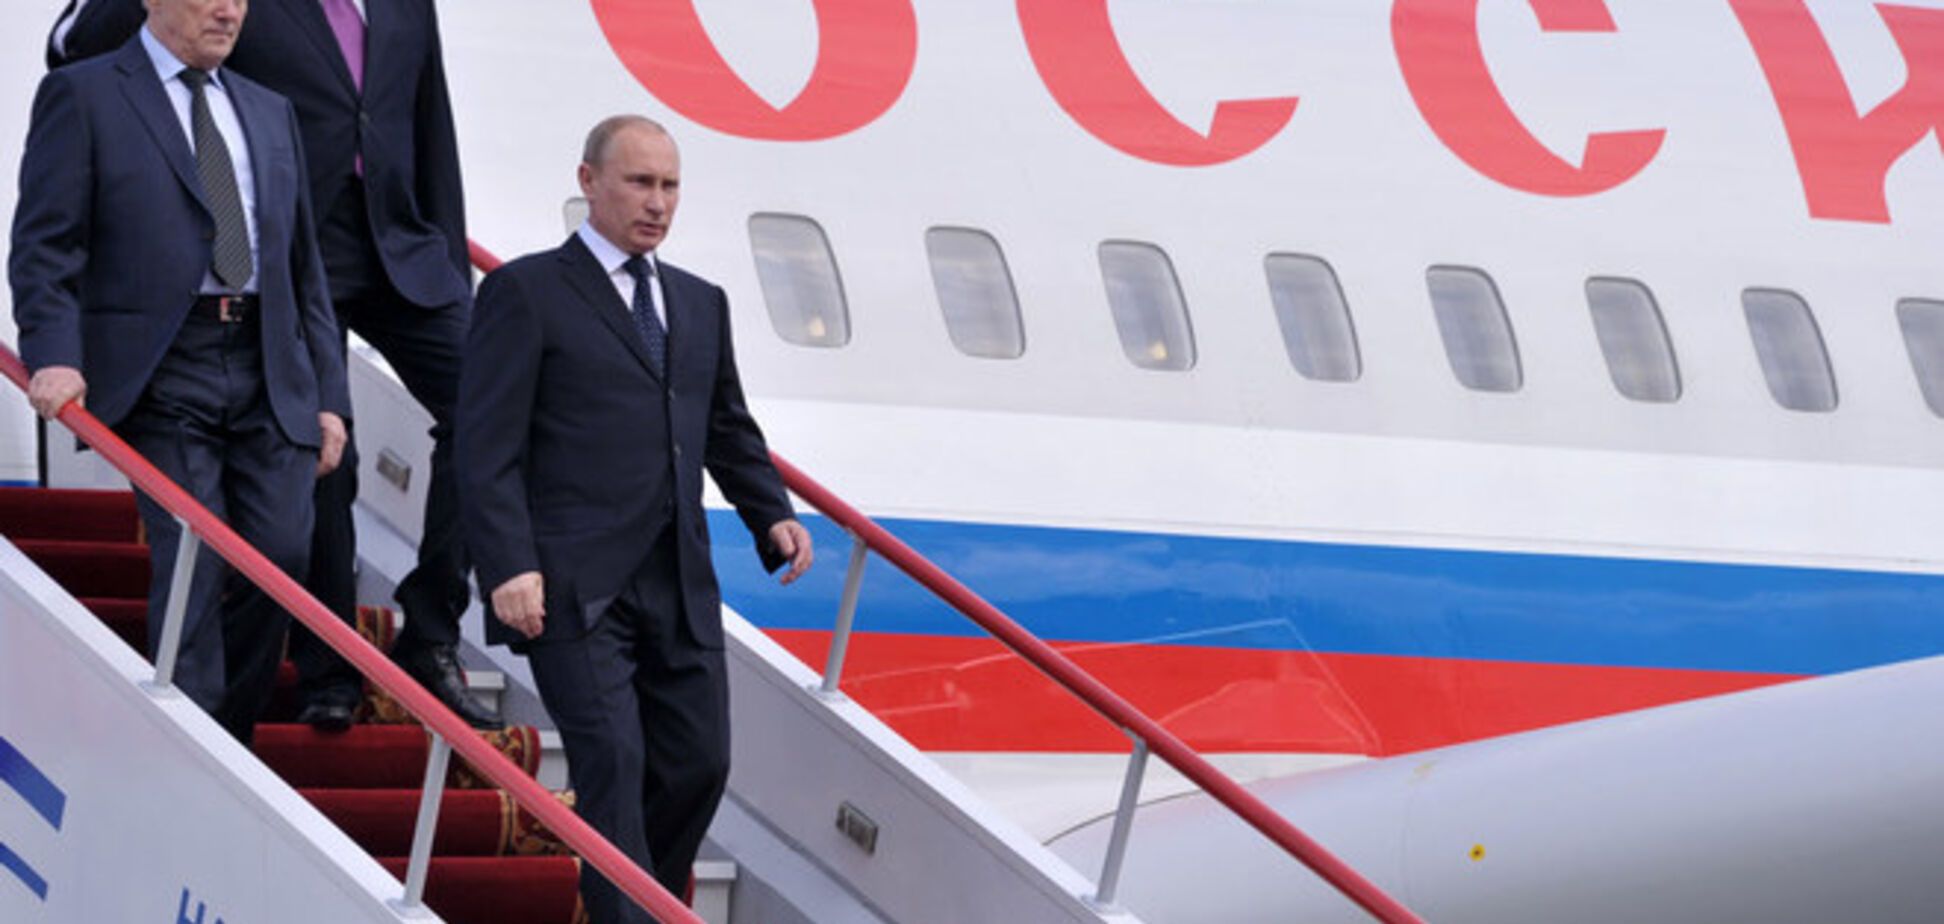 ЗМІ повідомили про прибуття Путіна до Севастополя